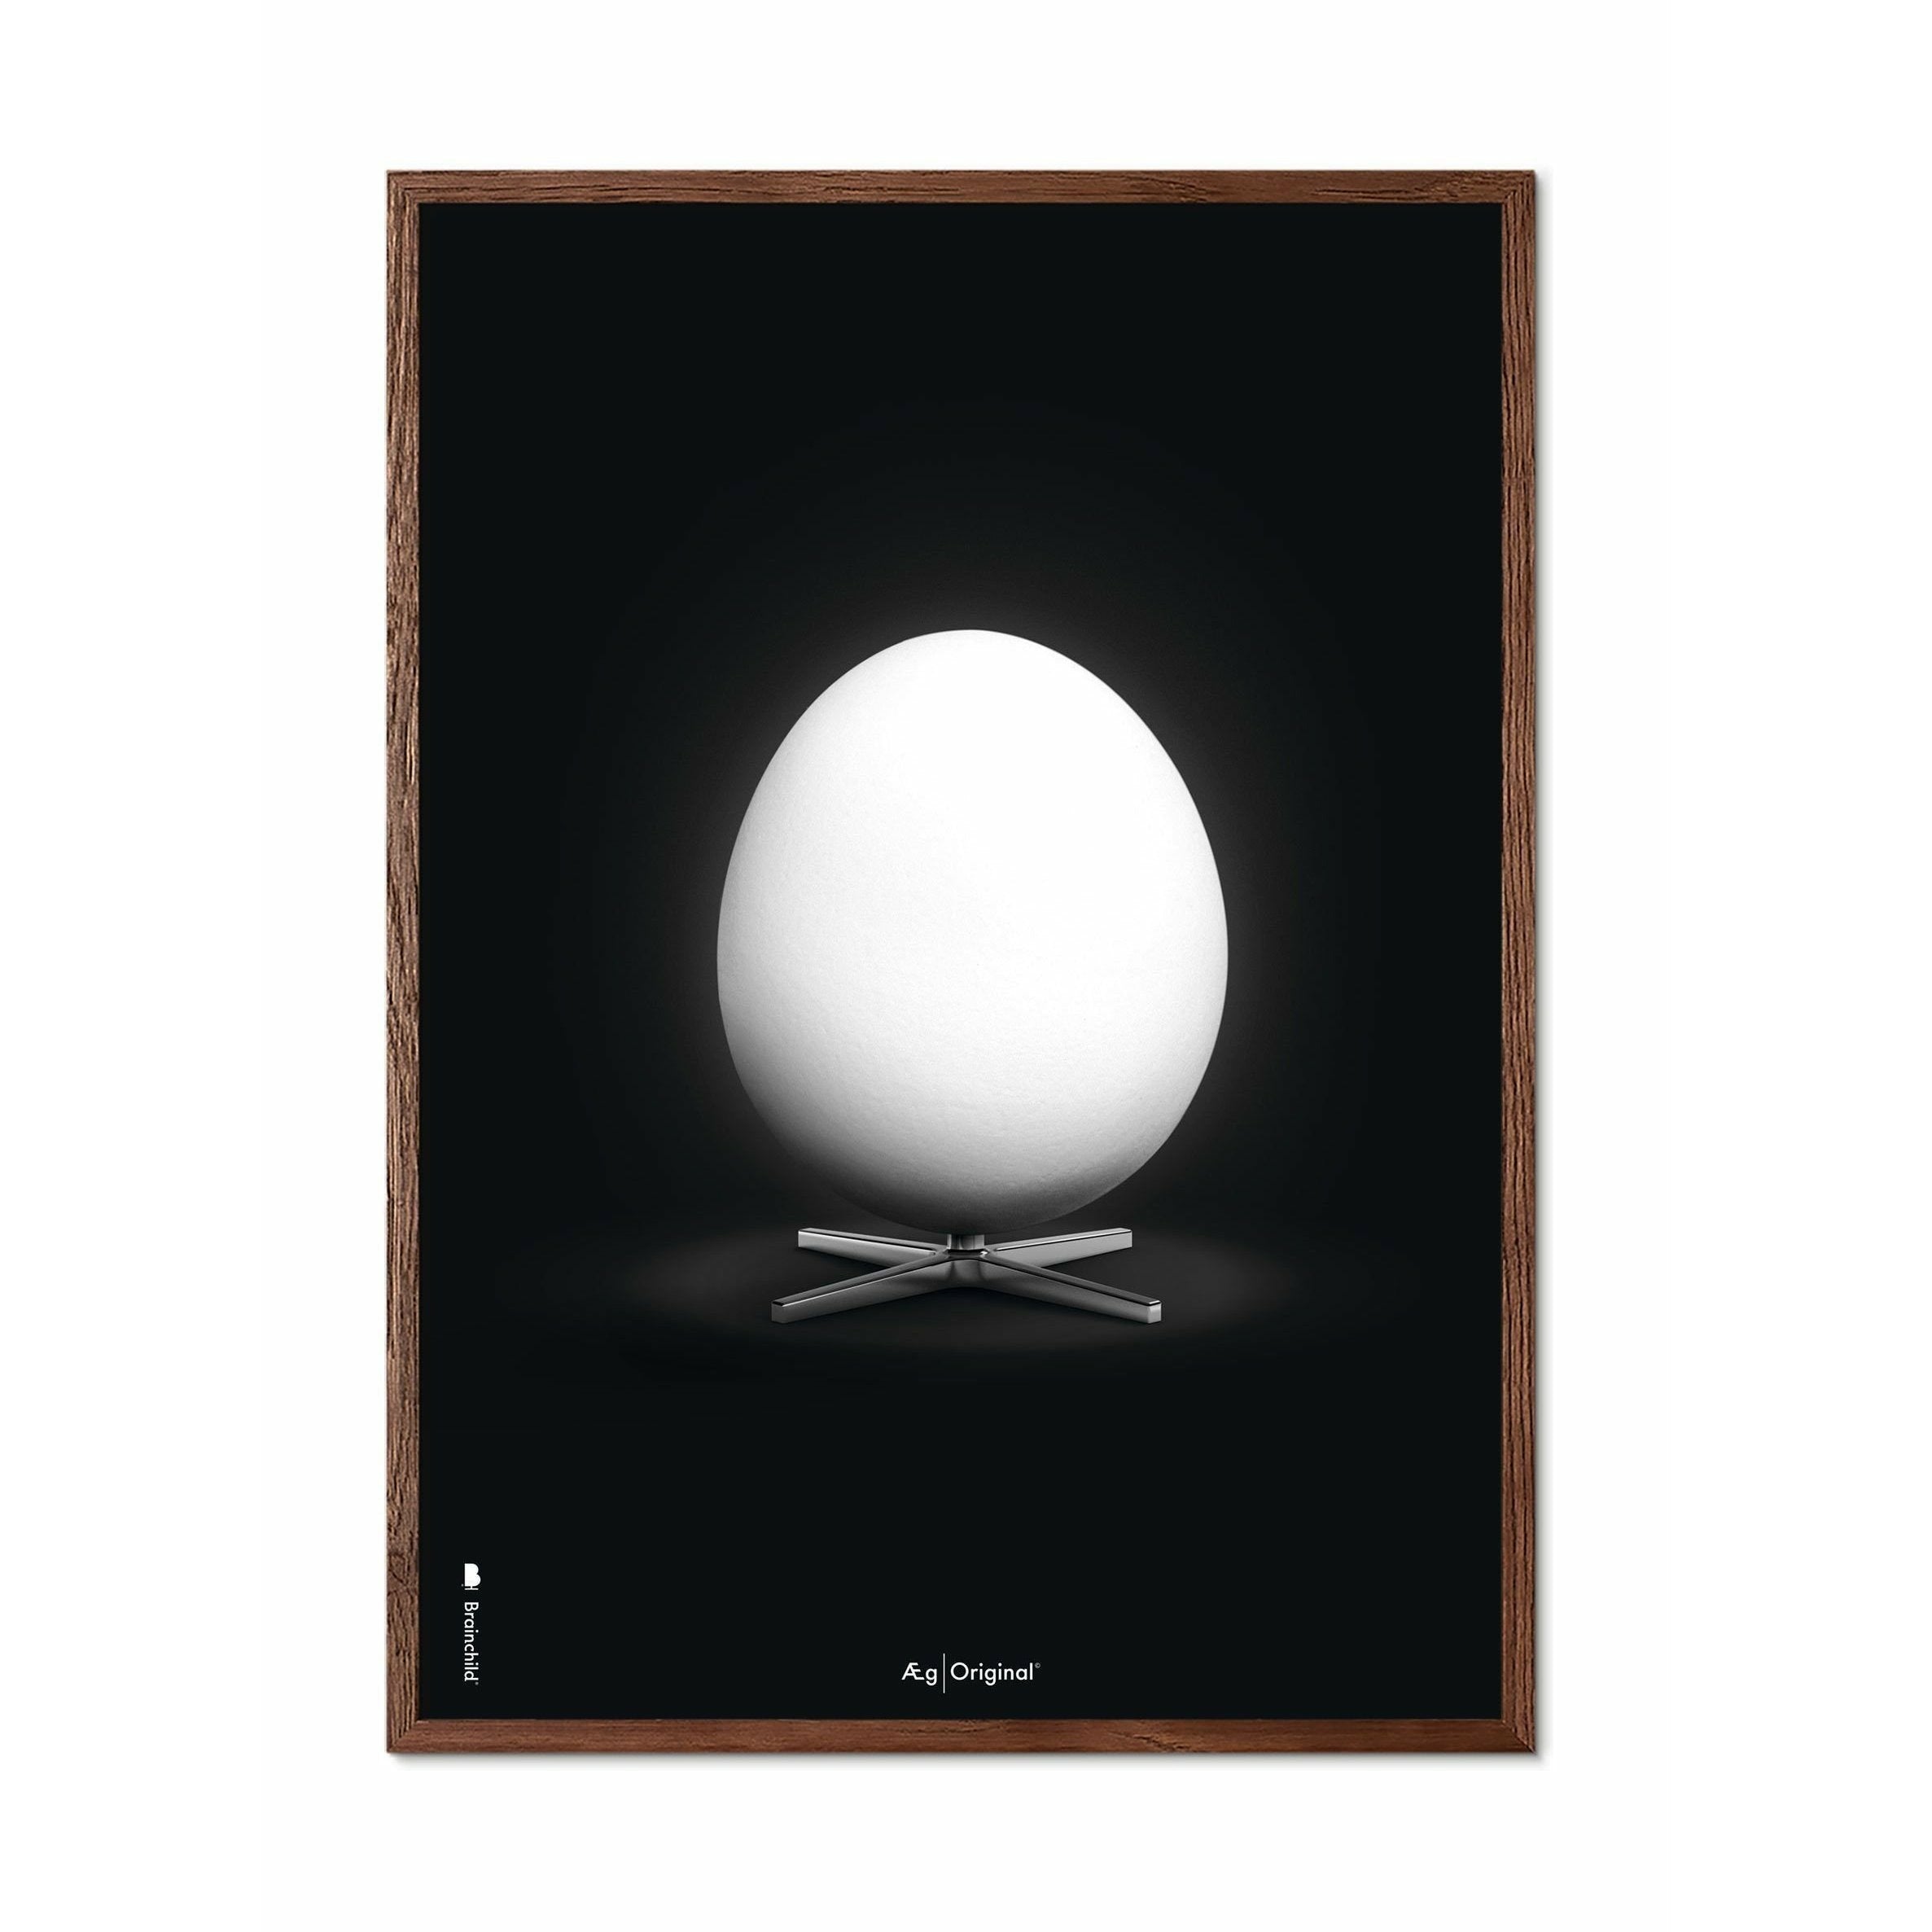 Póster clásico de huevo de creación, marco hecho de madera oscura 50x70 cm, fondo negro